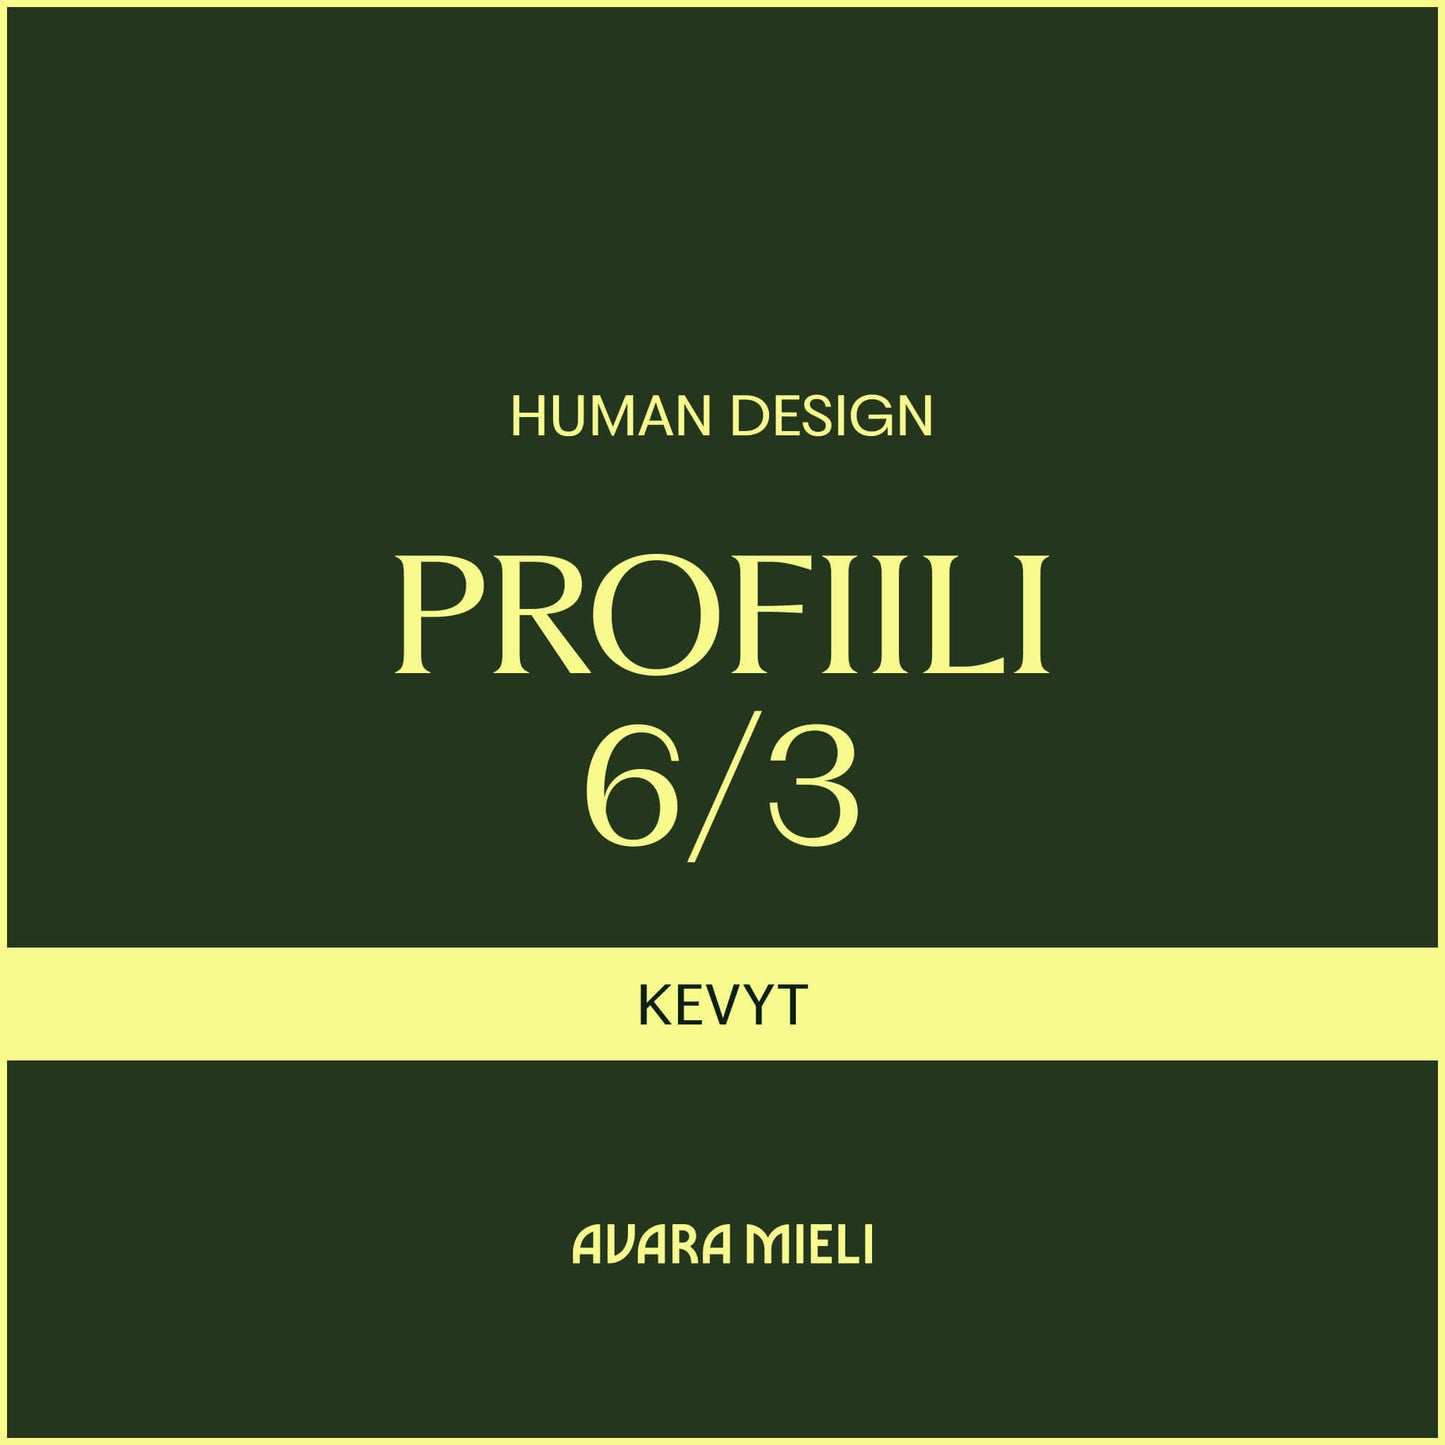 Human Design Profiili 6/3